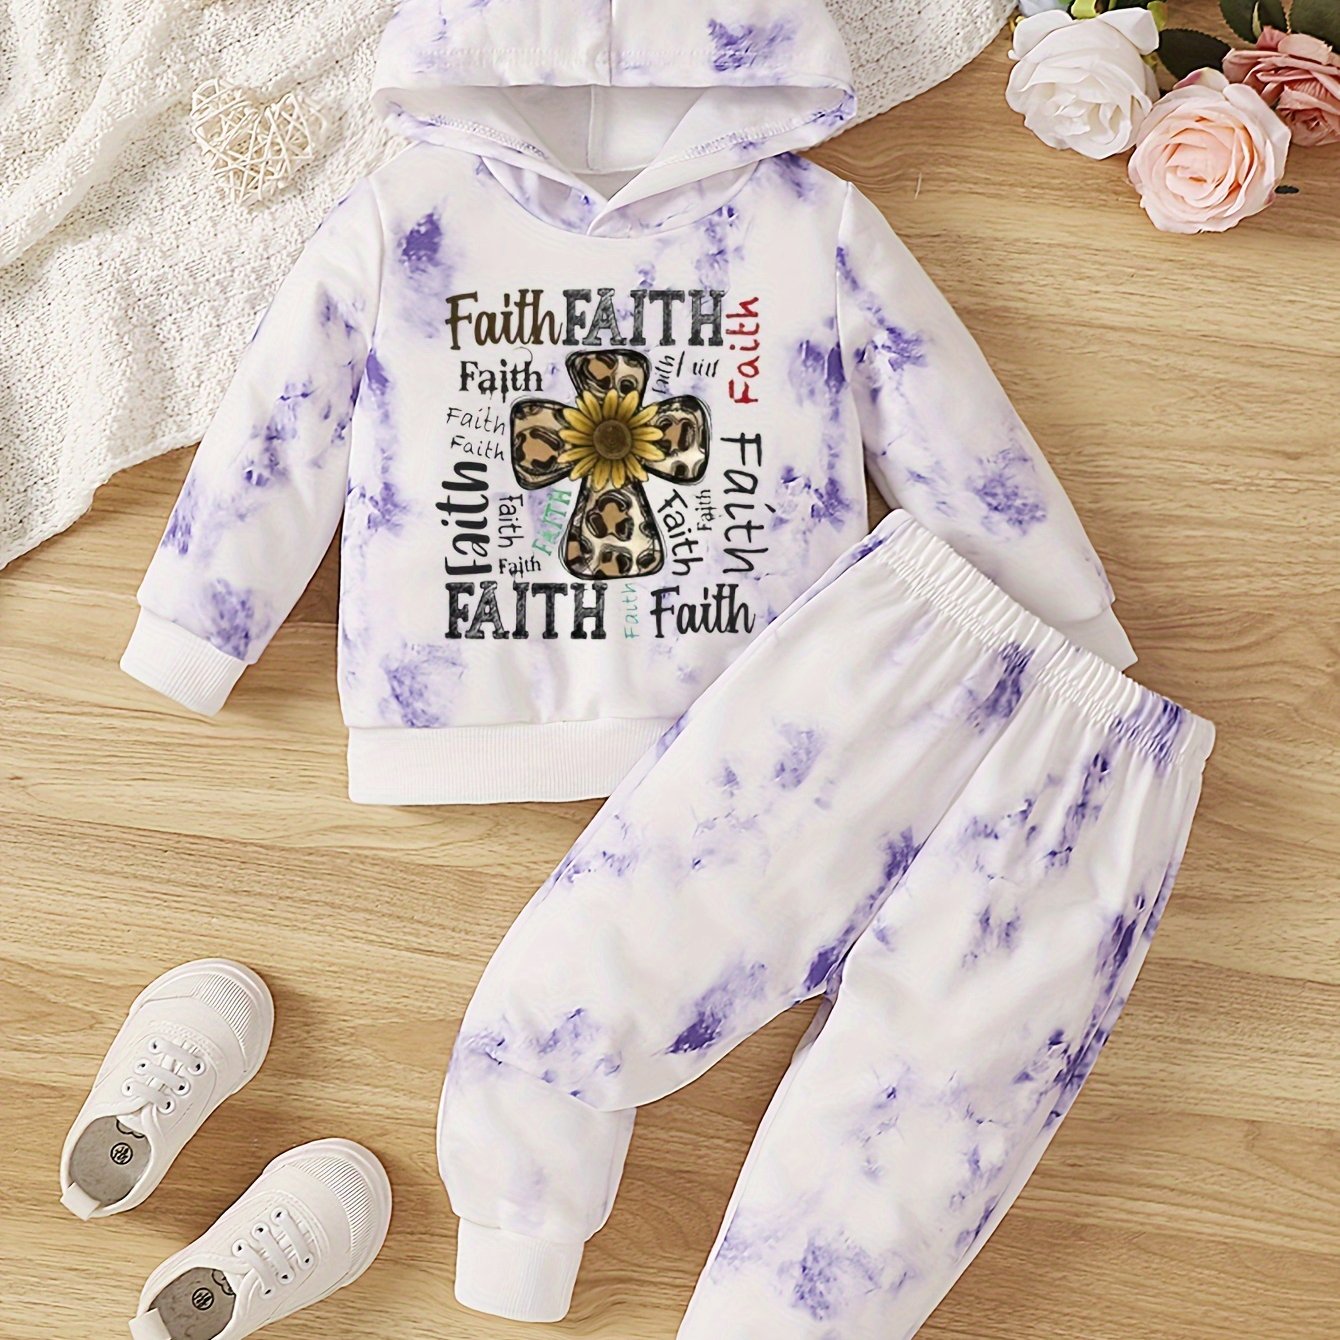 FAITH (sunflower cross) Toddler Christian Casual Outfit claimedbygoddesigns